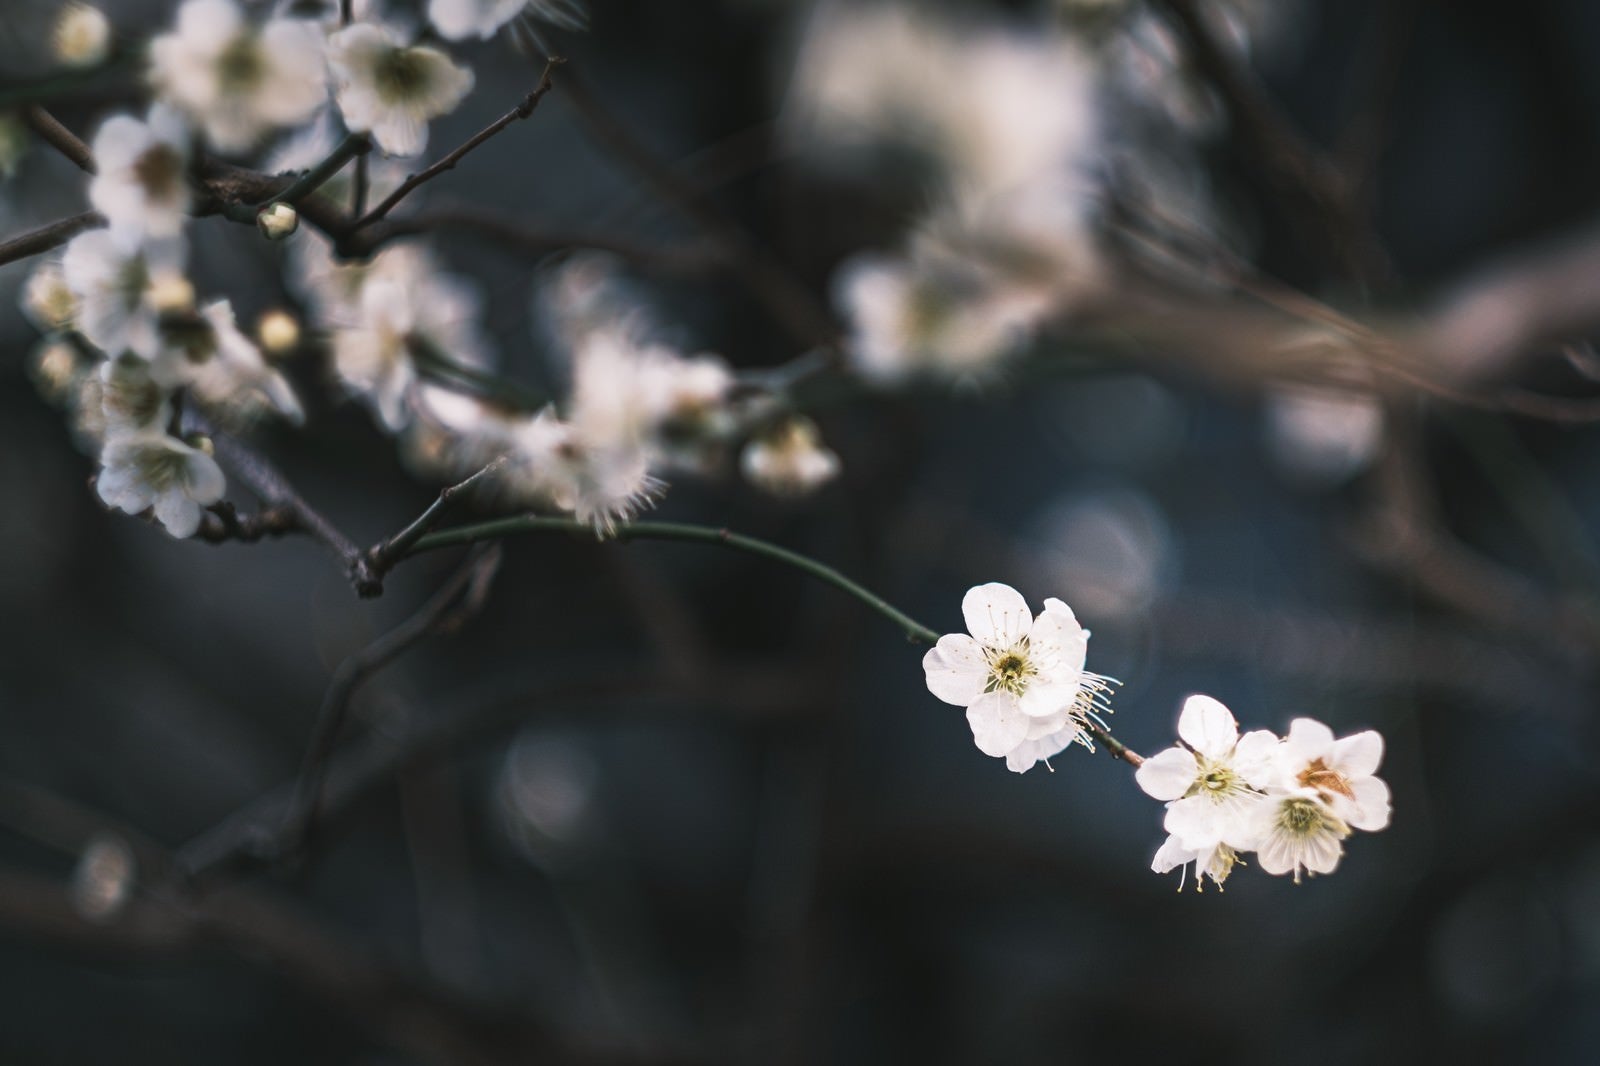 「風に揺れる梅の花」の写真